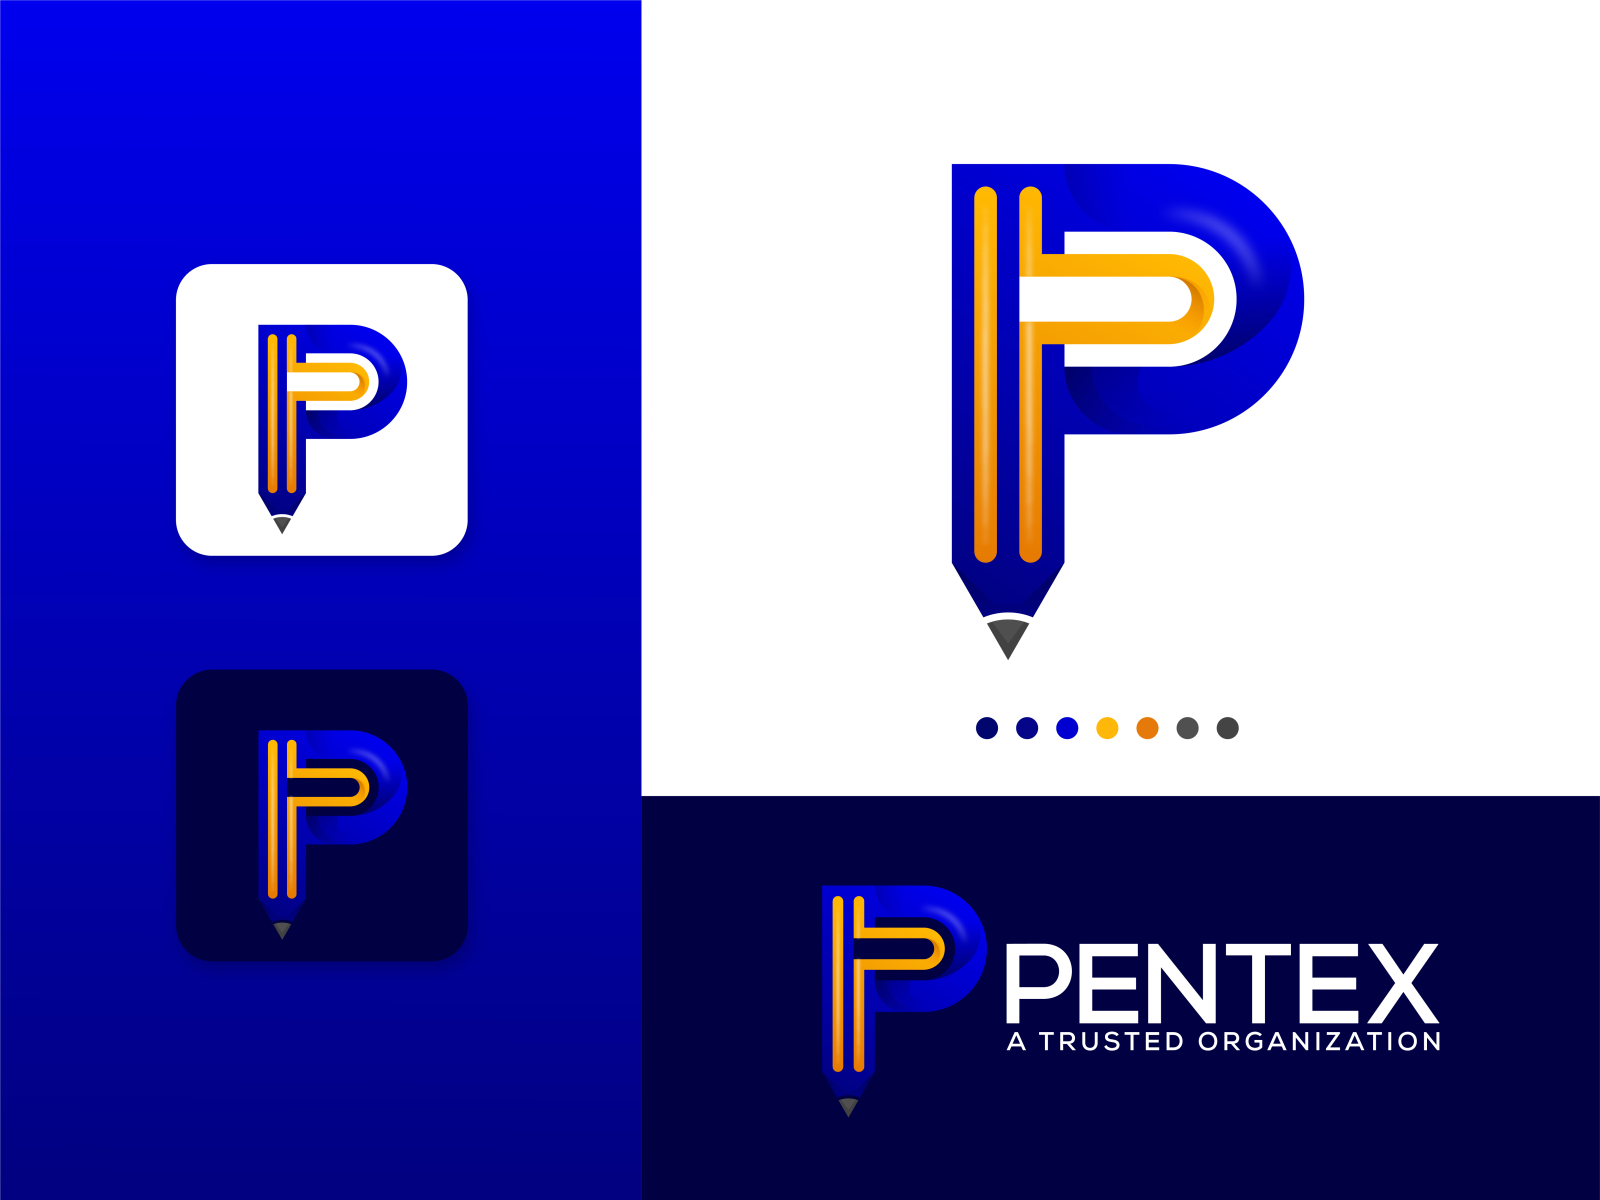 organization logos starting with p